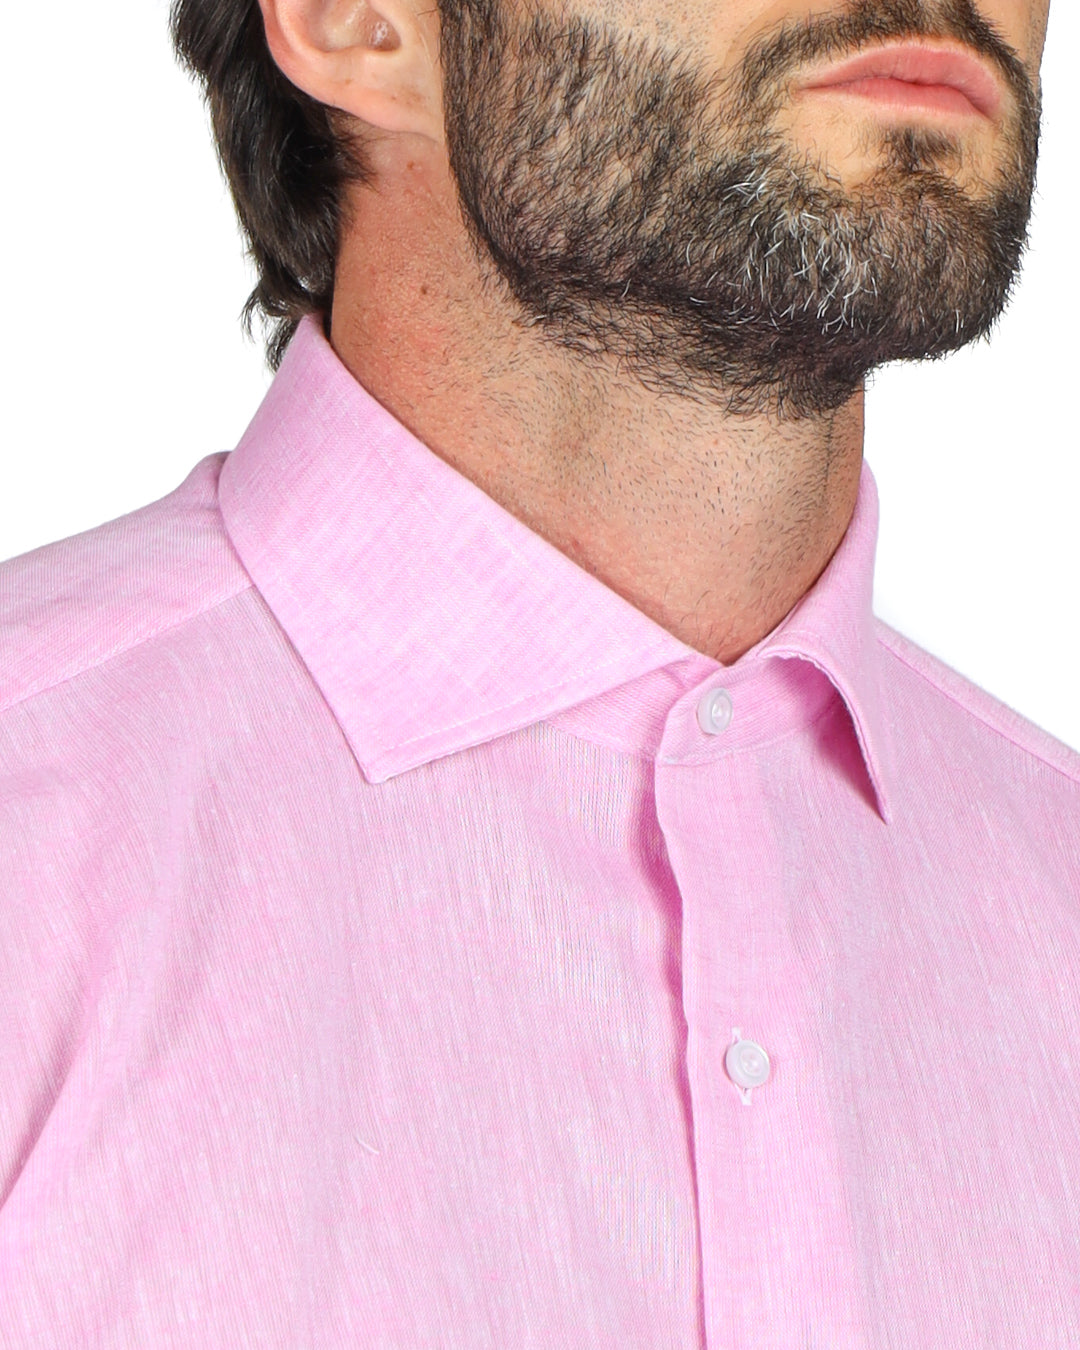 Praiano - Classic pink linen shirt